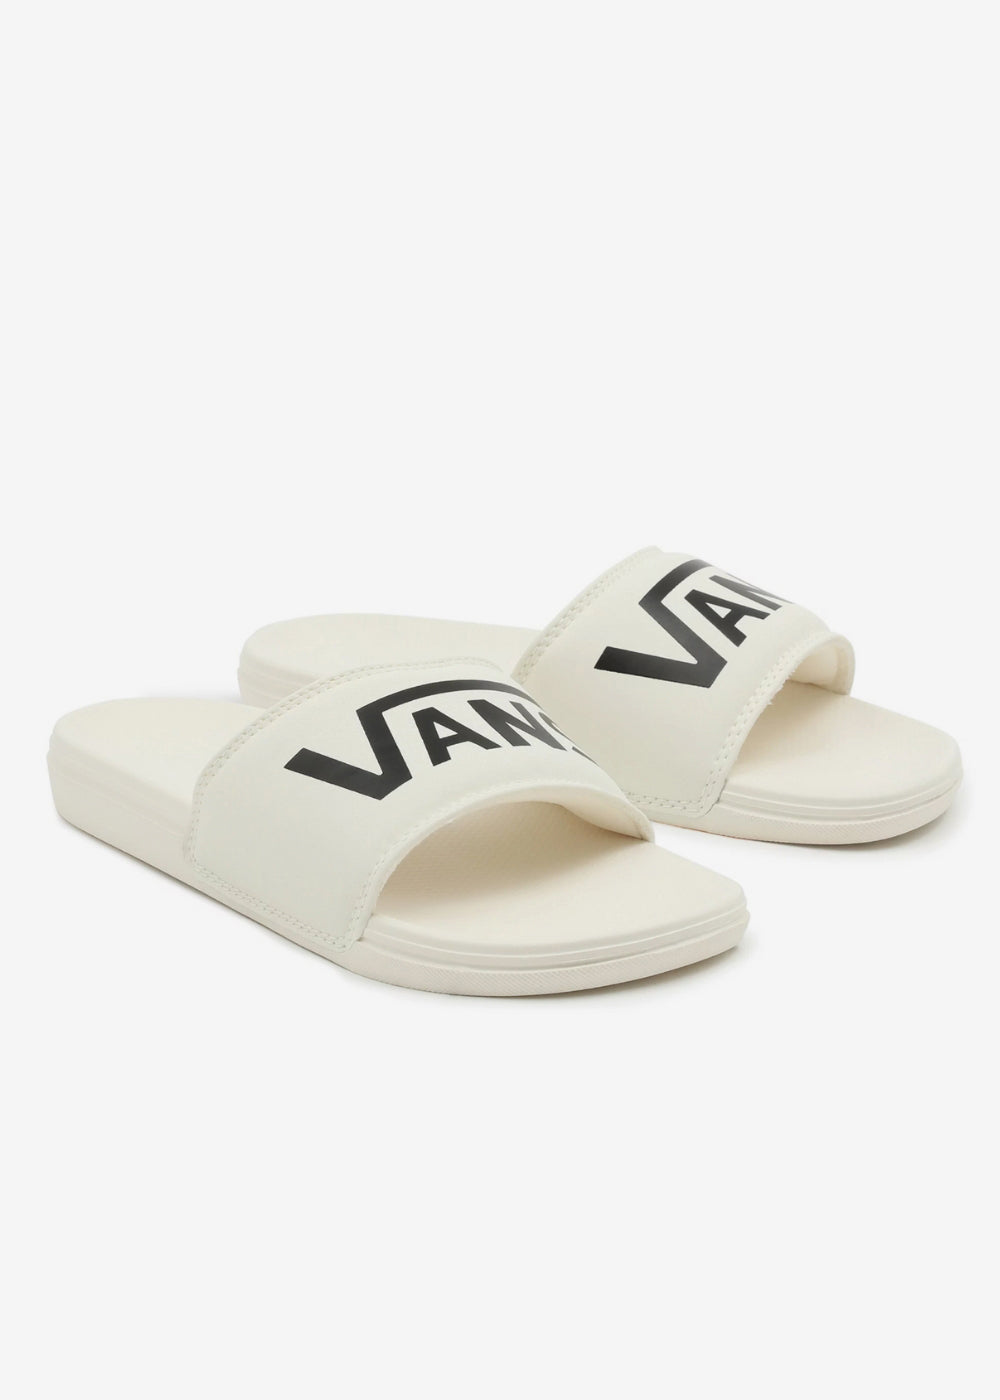 La Costa Slide Sandals by Vans